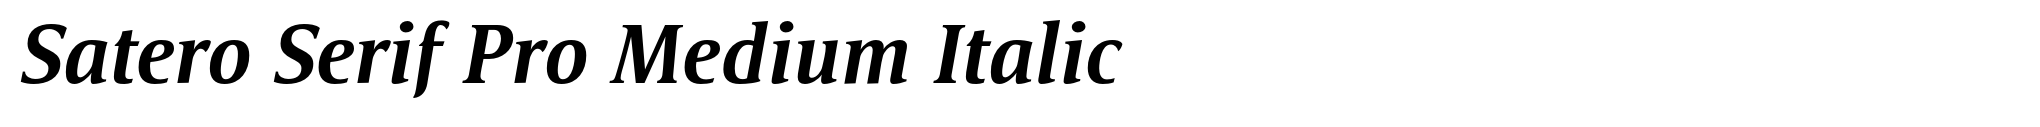 Satero Serif Pro Medium Italic image